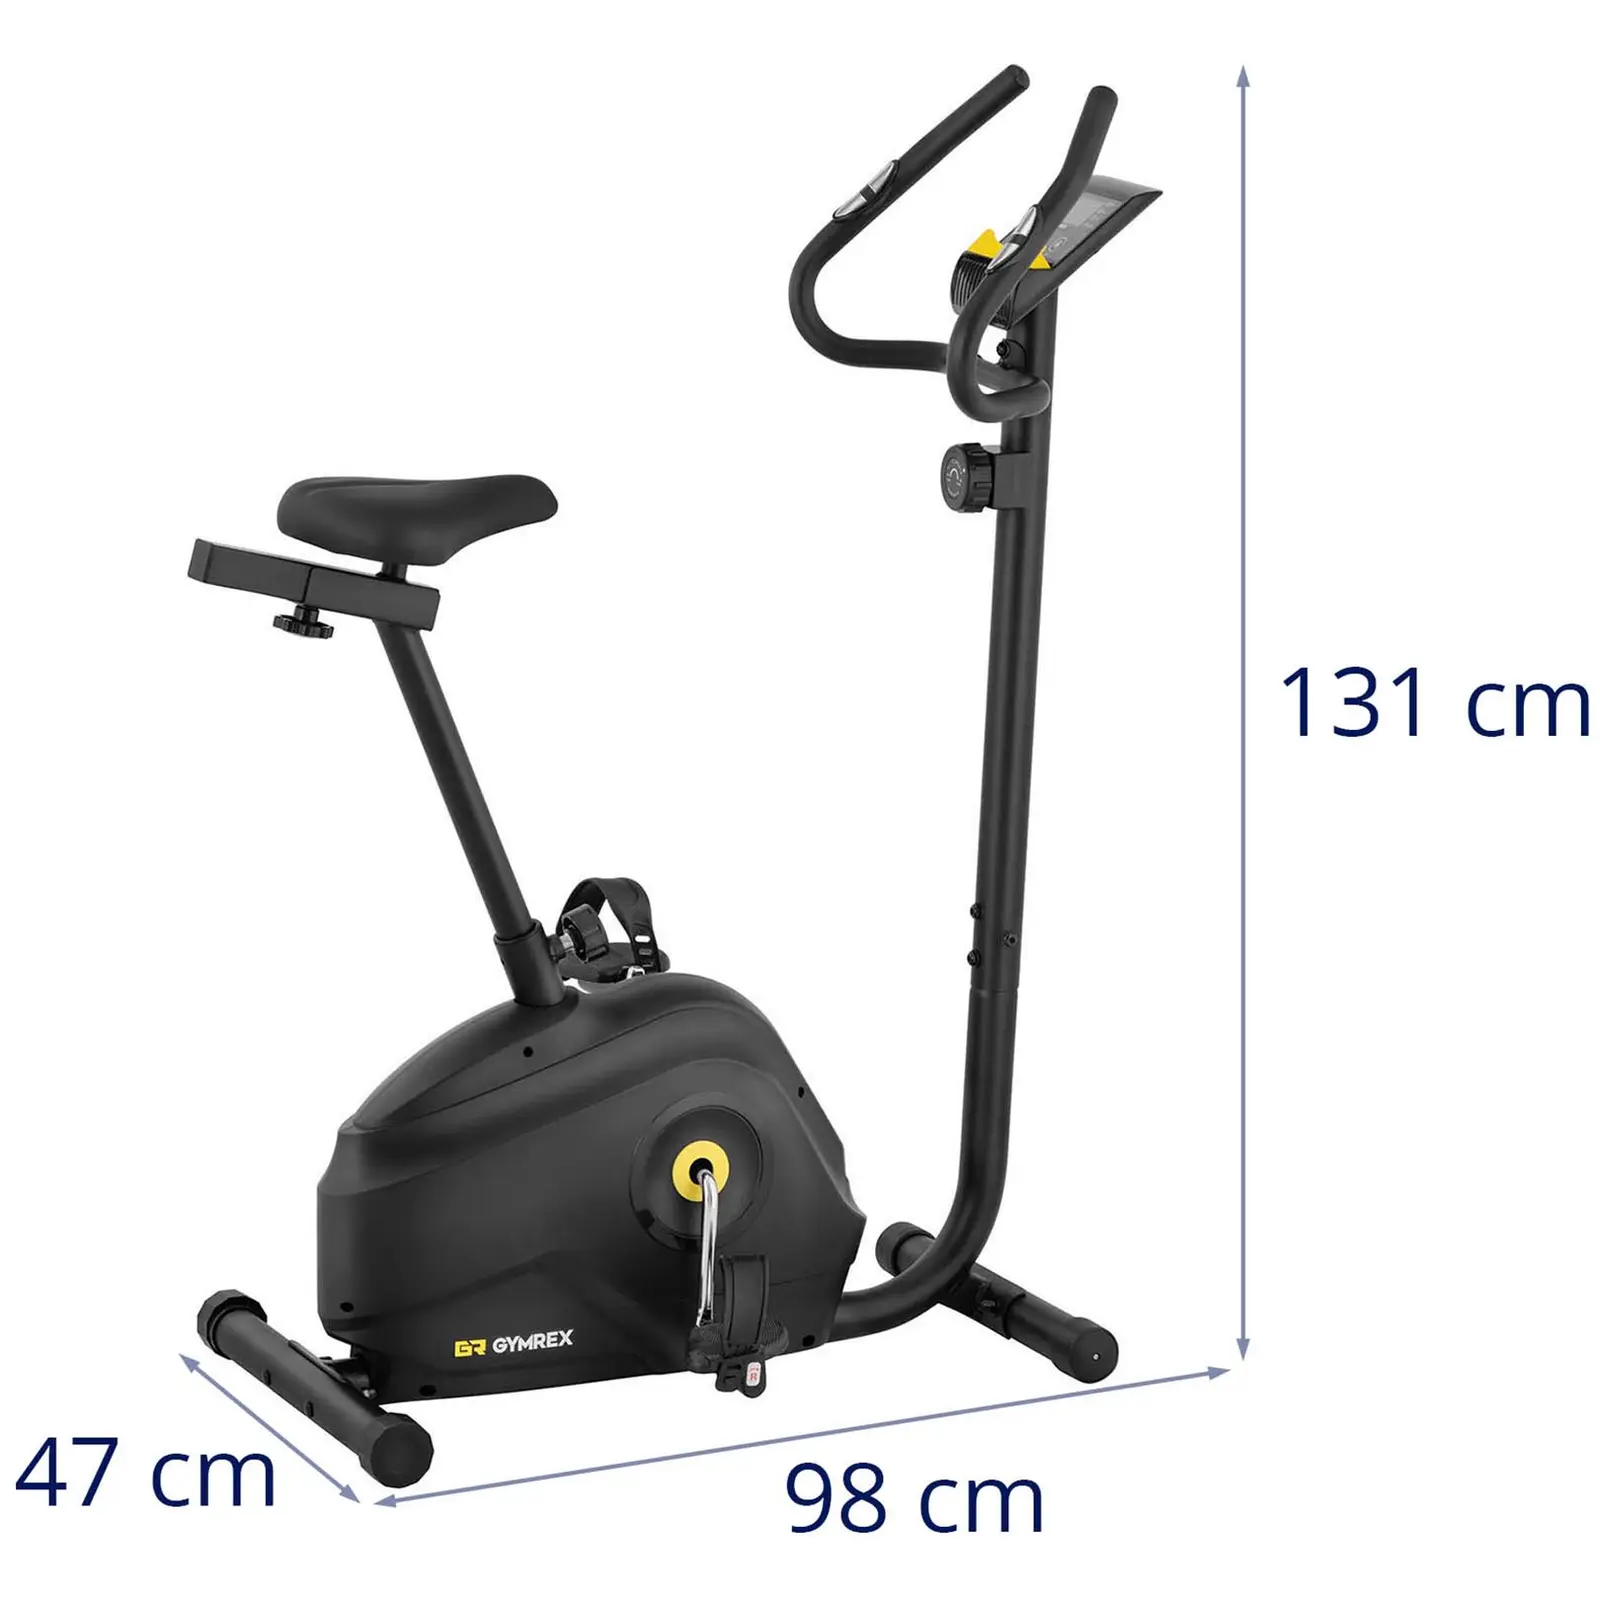 Motionscykel - belastning 4 kg - LCD - højde 72-88,5 cm